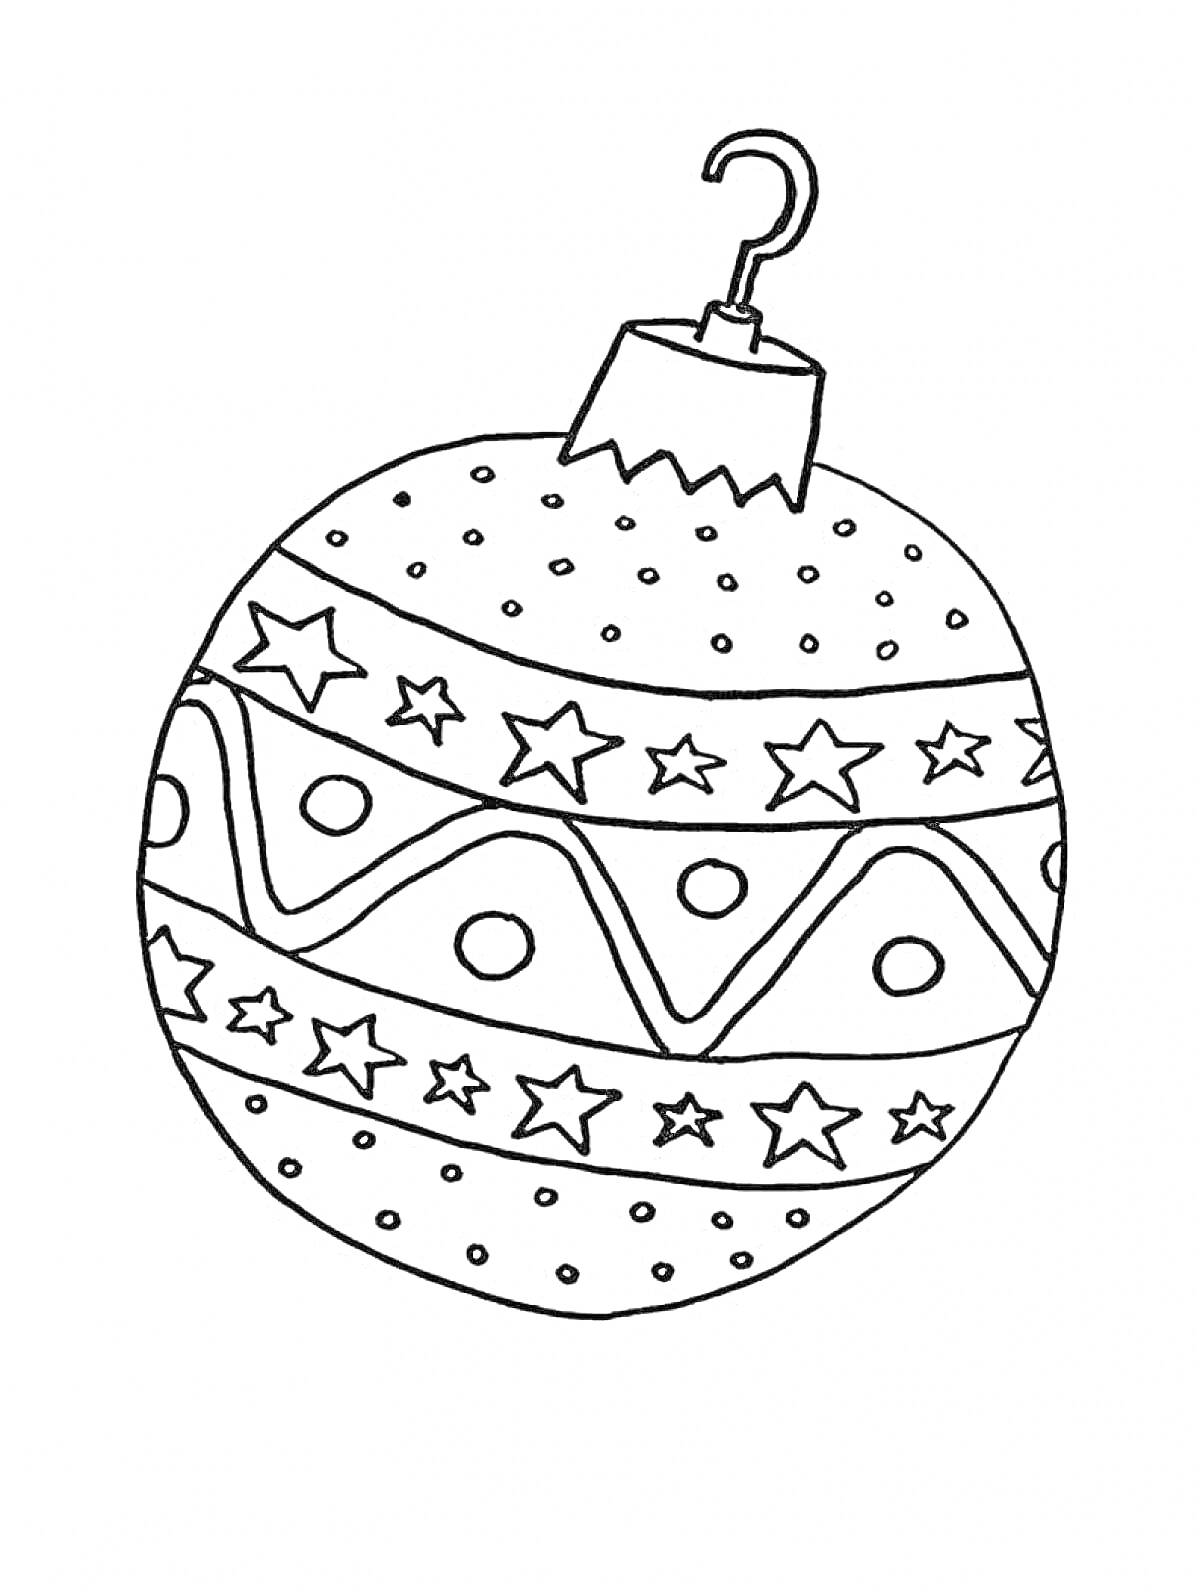 Раскраска Елочный шарик с узором из звезд, волн и точек